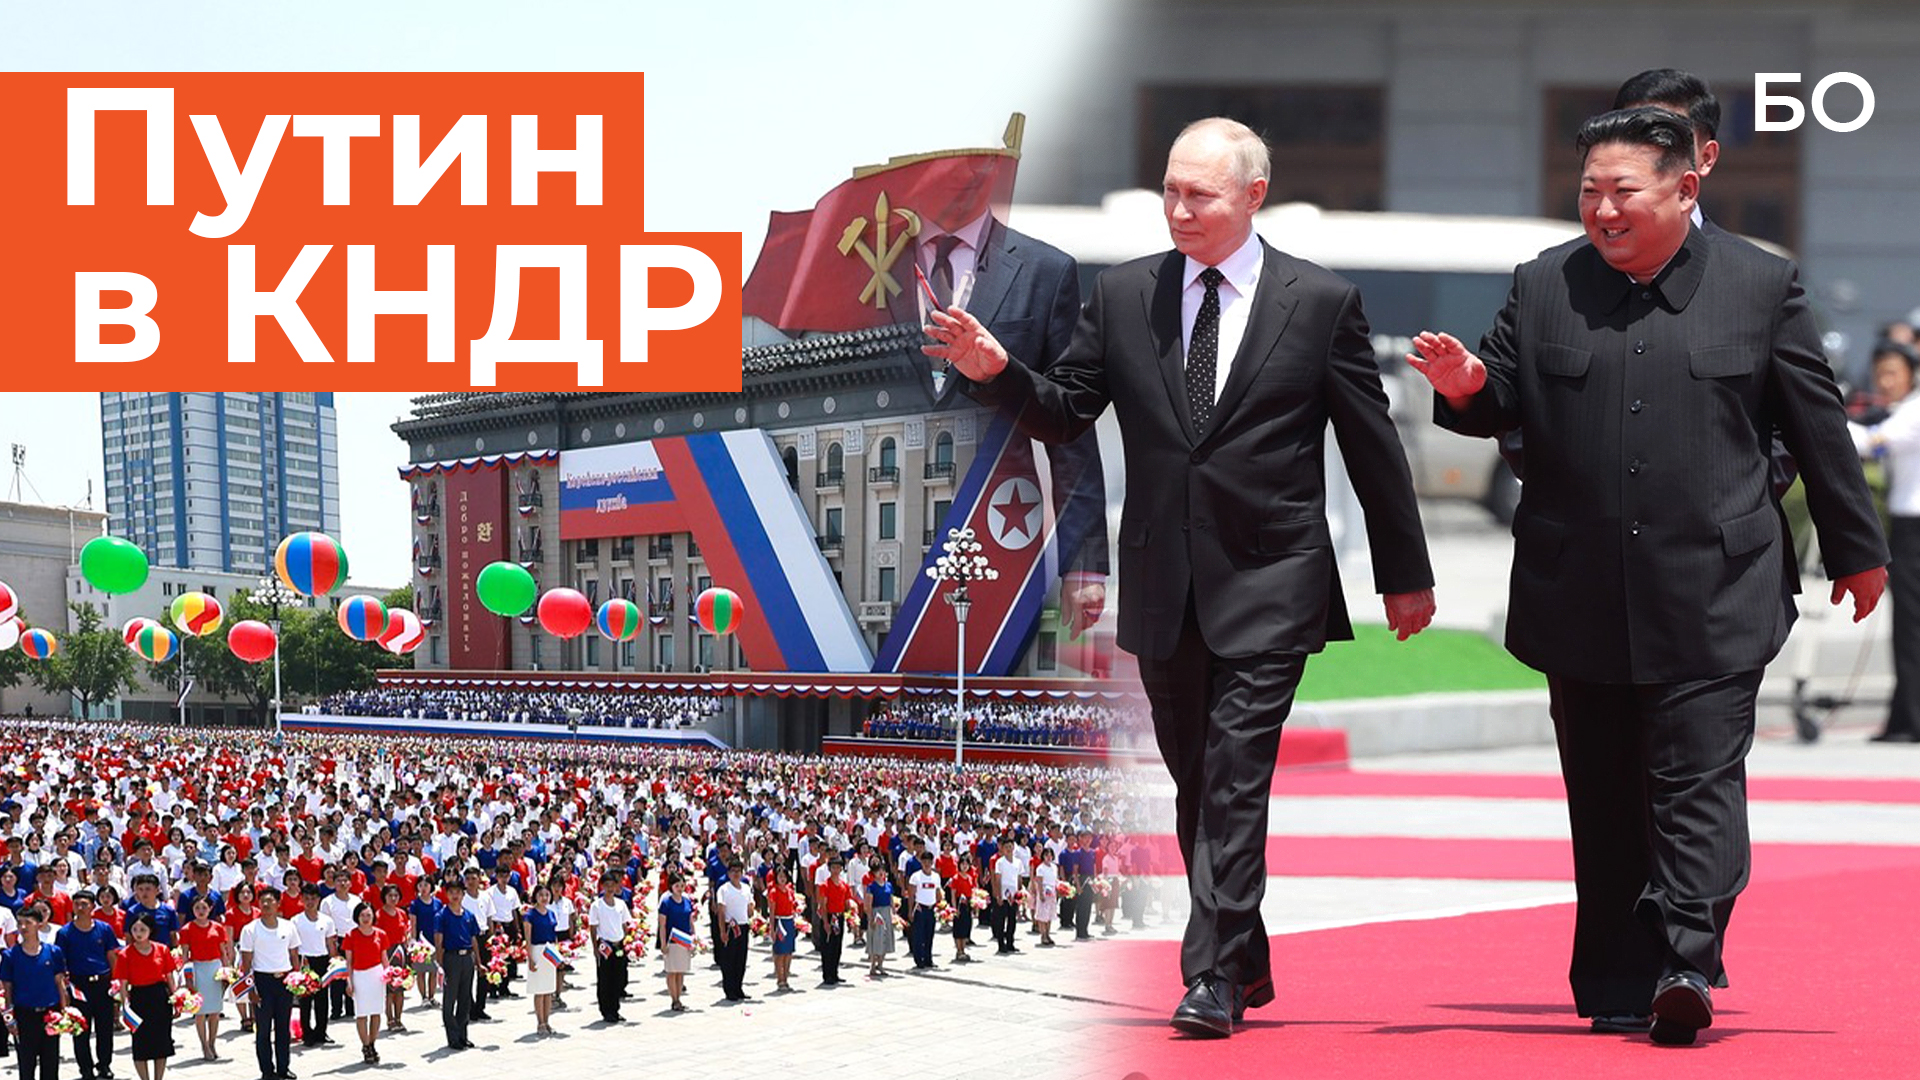 Путин впервые с 2000 года прибыл в КНДР: о чем договорились лидеры стран?